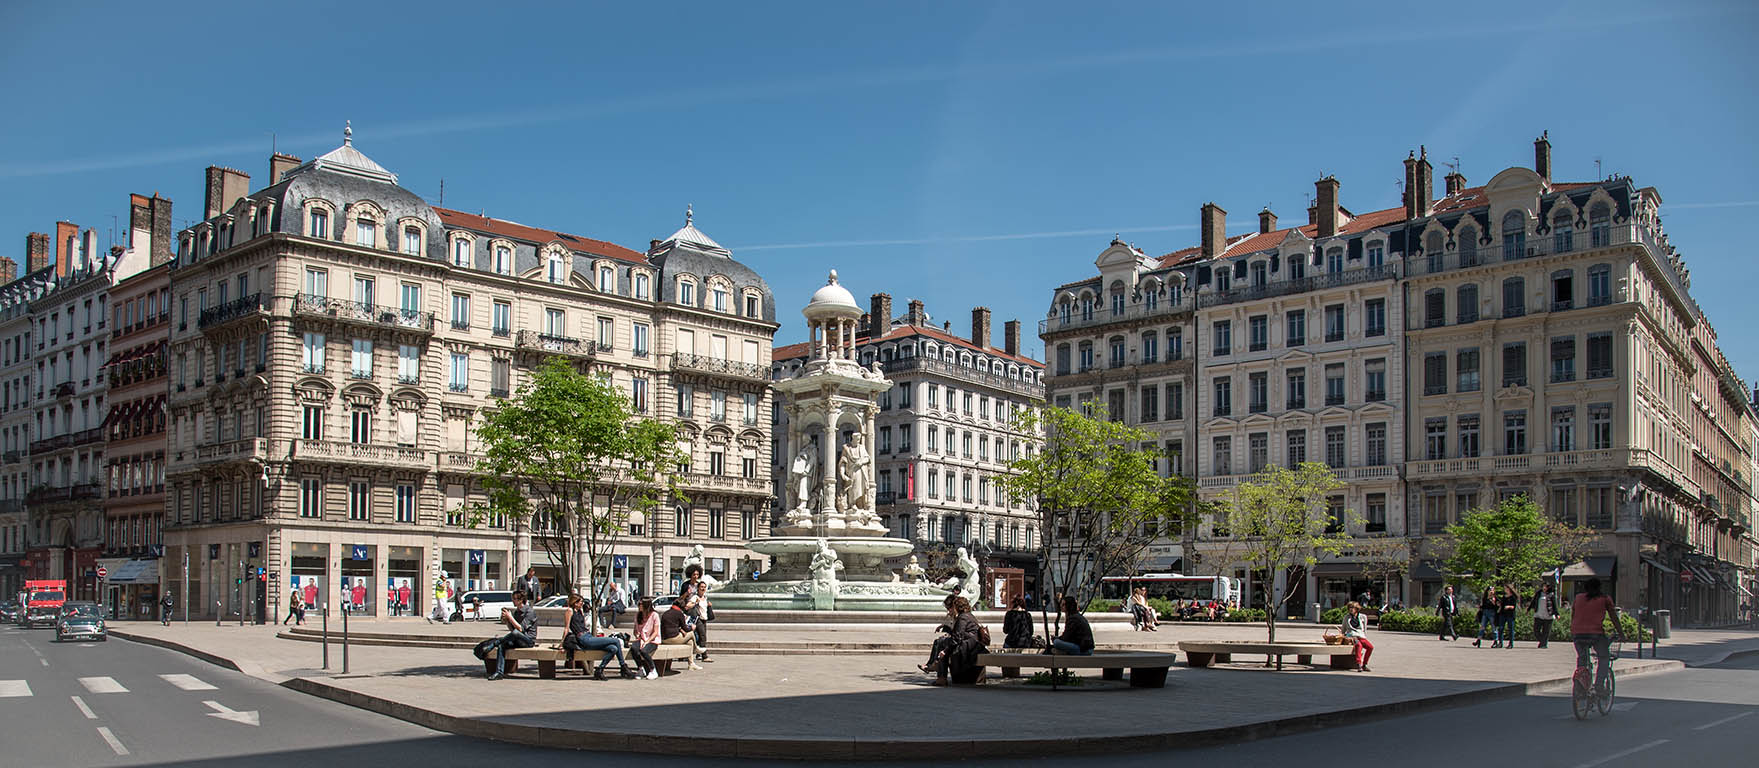 Place des Jacobins - La fontaine fut réalisée en décembre 1885 par Gaspard André (1840-1896) - Lyon 2ème